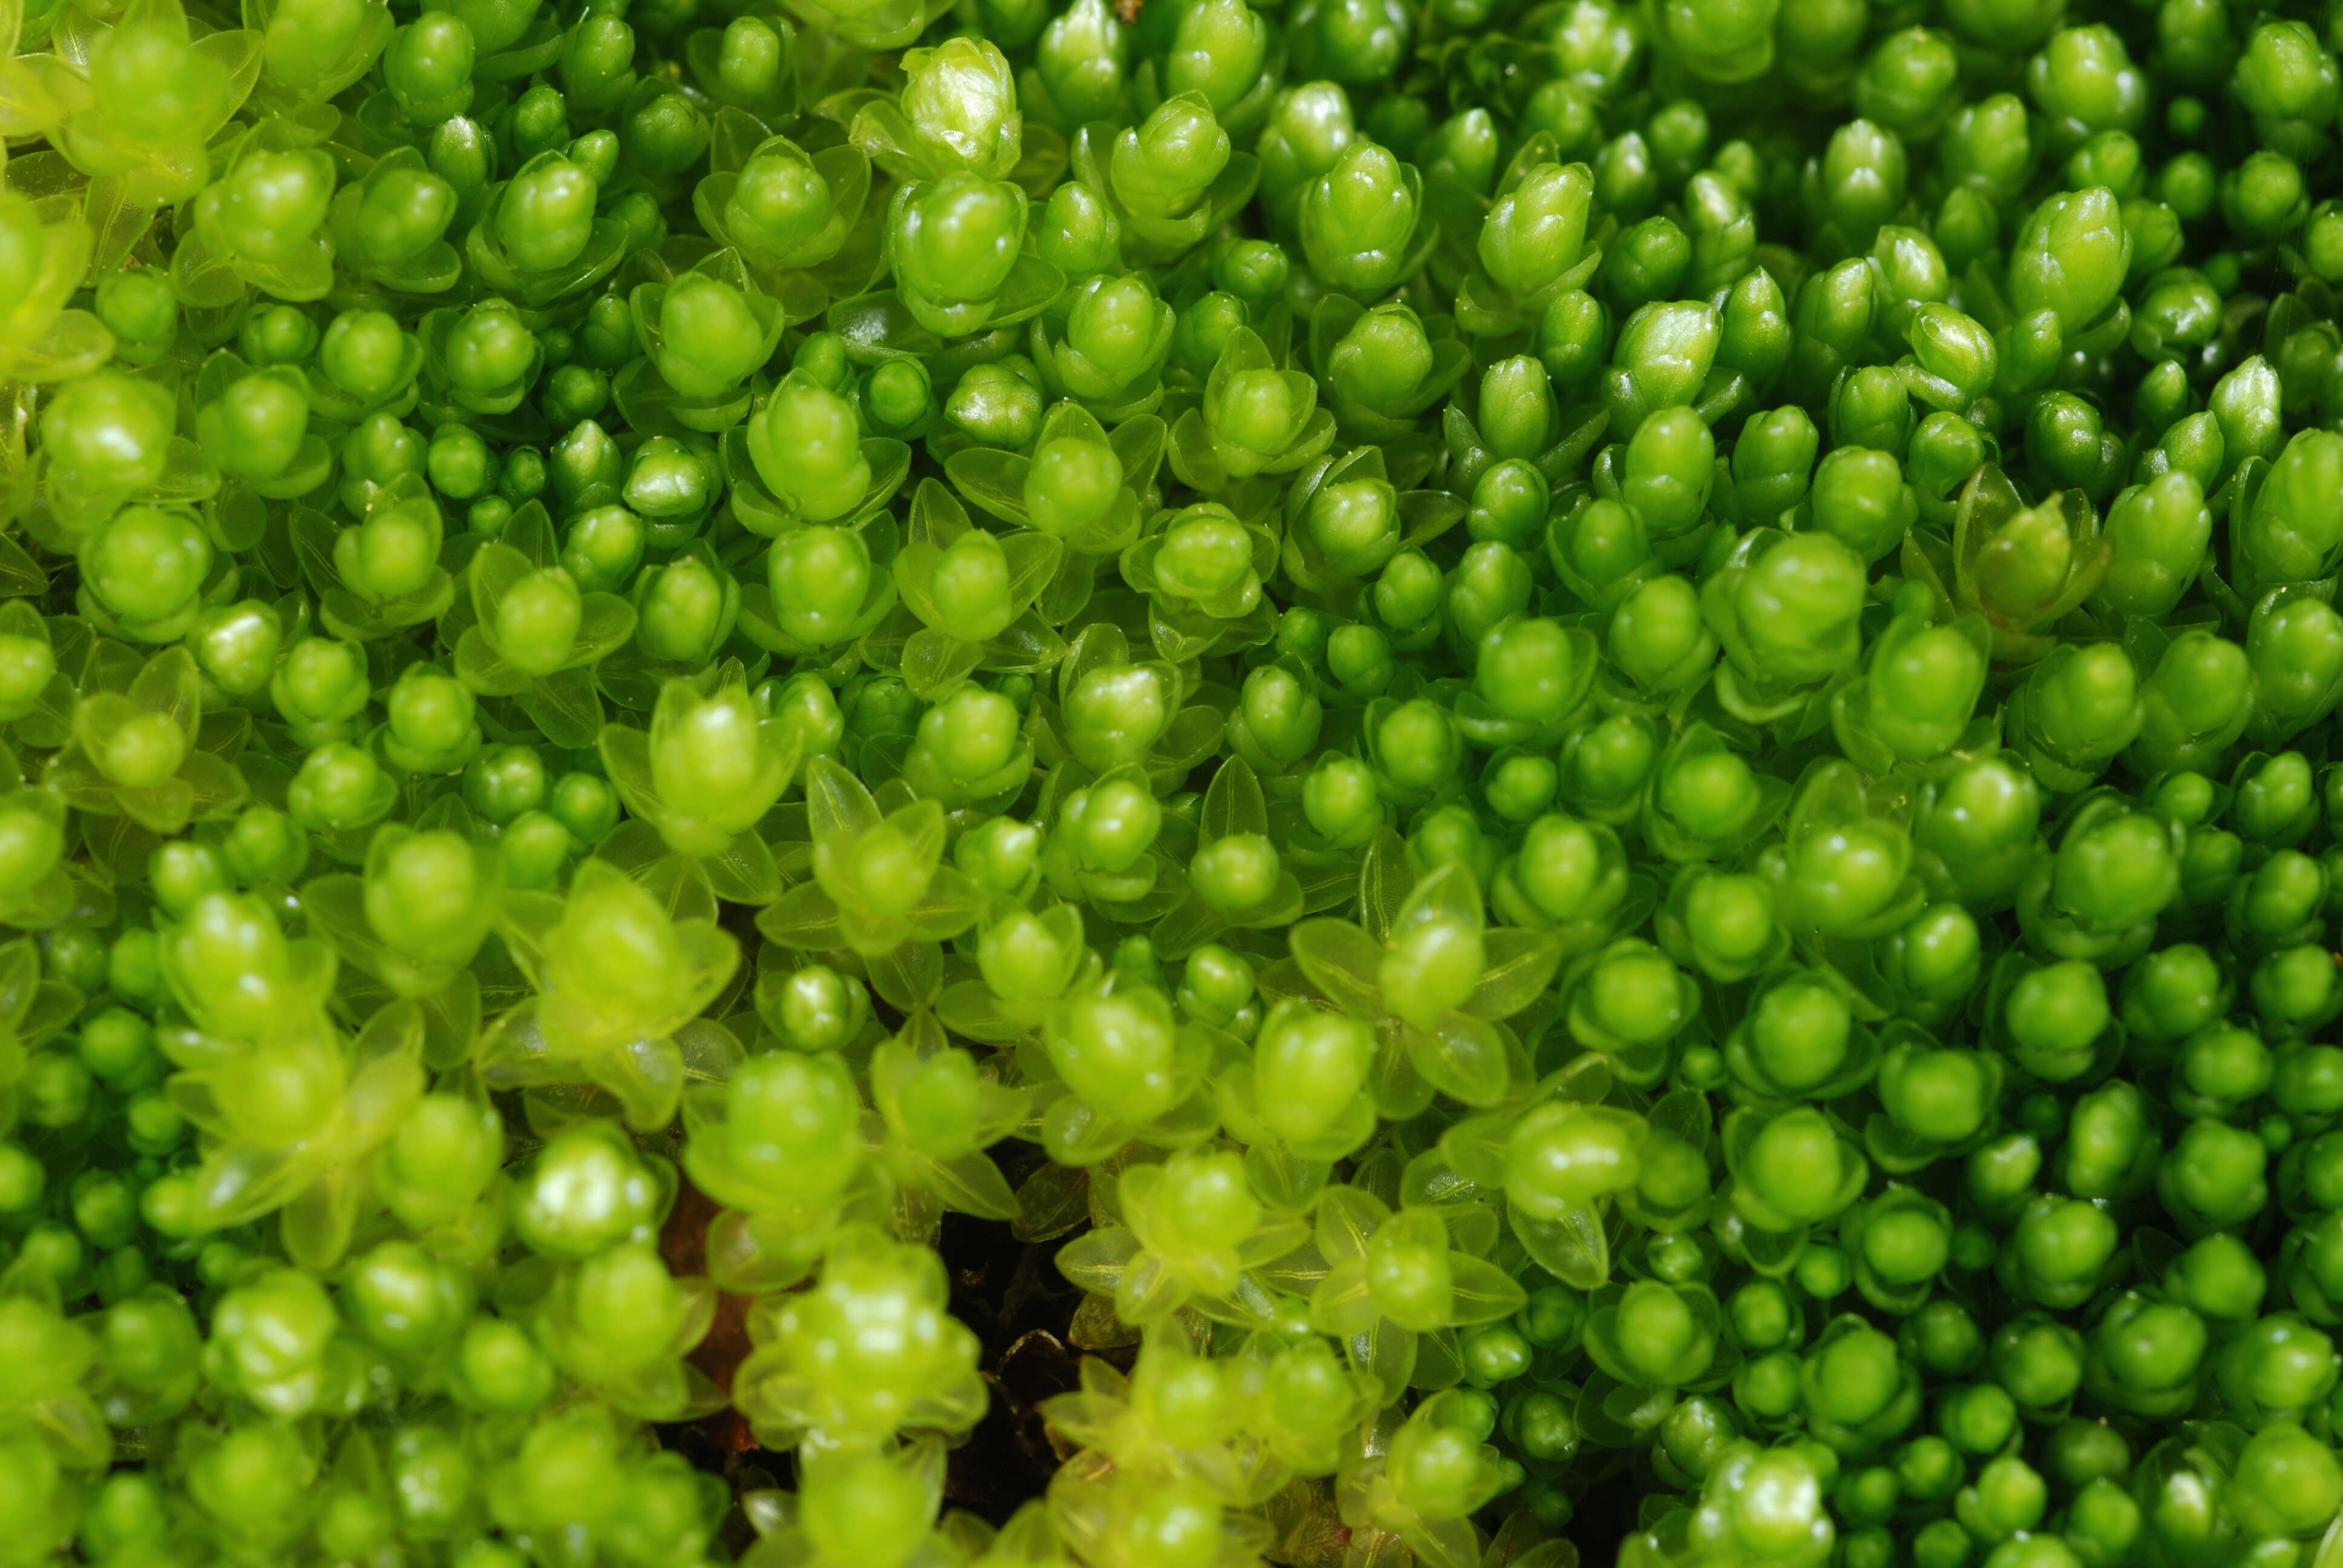 Image of bryum moss